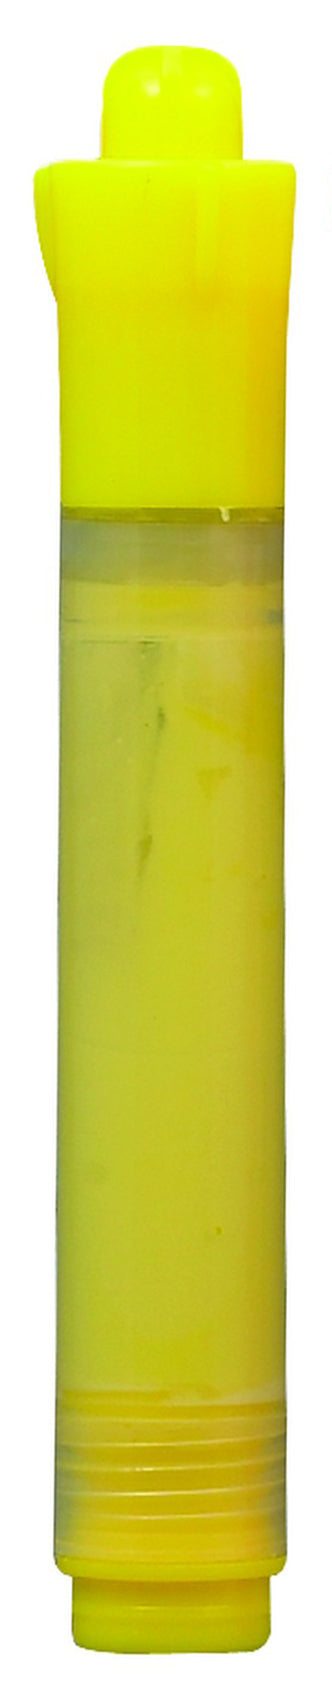 Neon Marker, Deluxe, Yellow (12 Each)-cityfoodequipment.com